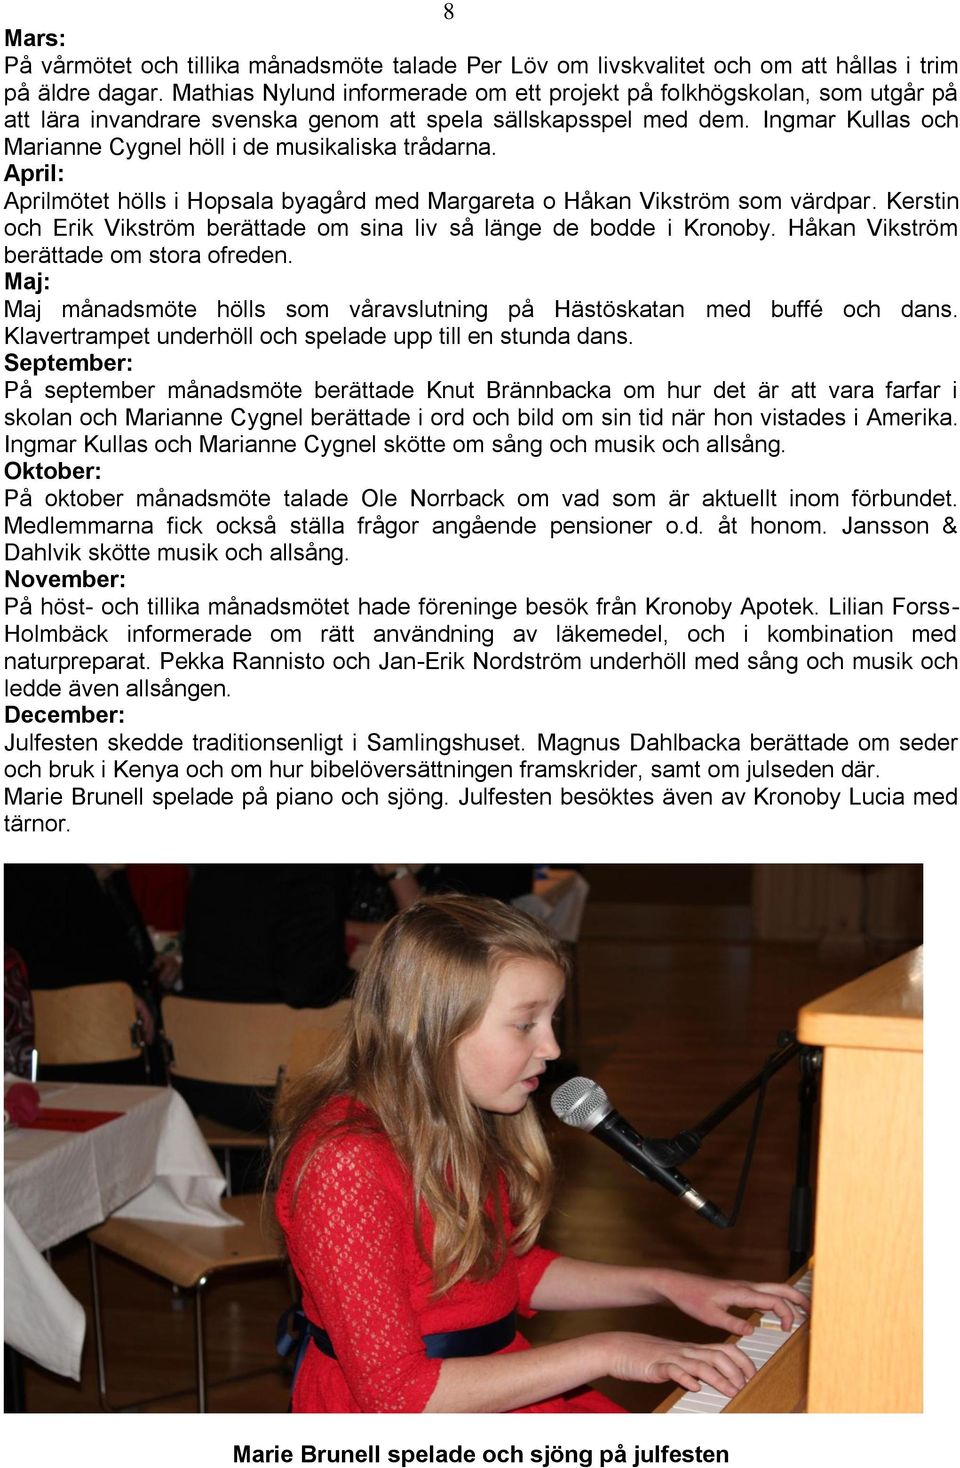 Ingmar Kullas och Marianne Cygnel höll i de musikaliska trådarna. April: Aprilmötet hölls i Hopsala byagård med Margareta o Håkan Vikström som värdpar.